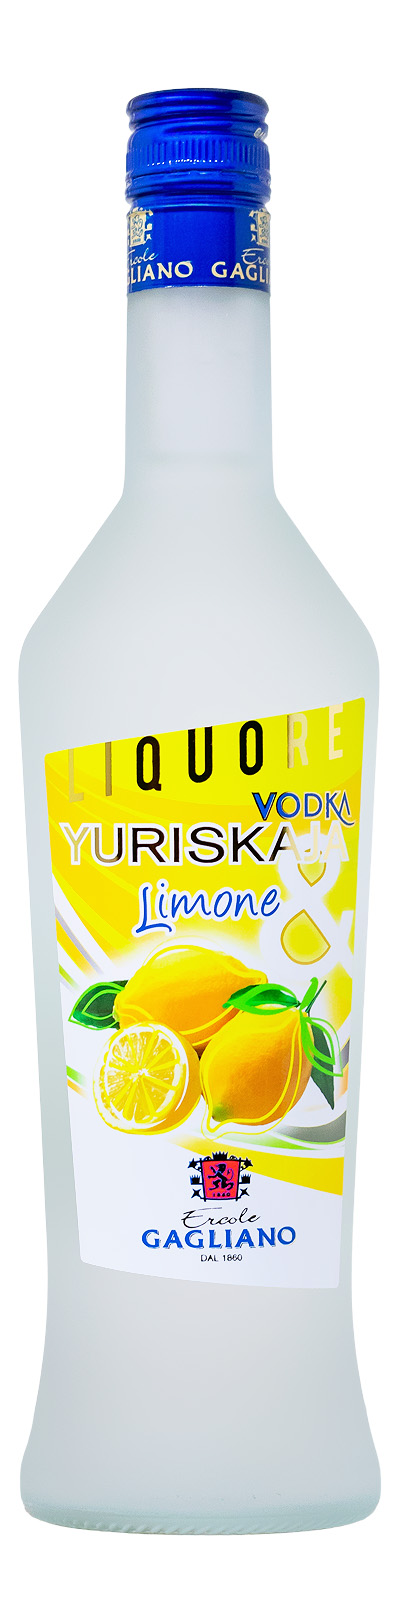 Gagliano Yuriskaja Limone - 0,7L 20% vol